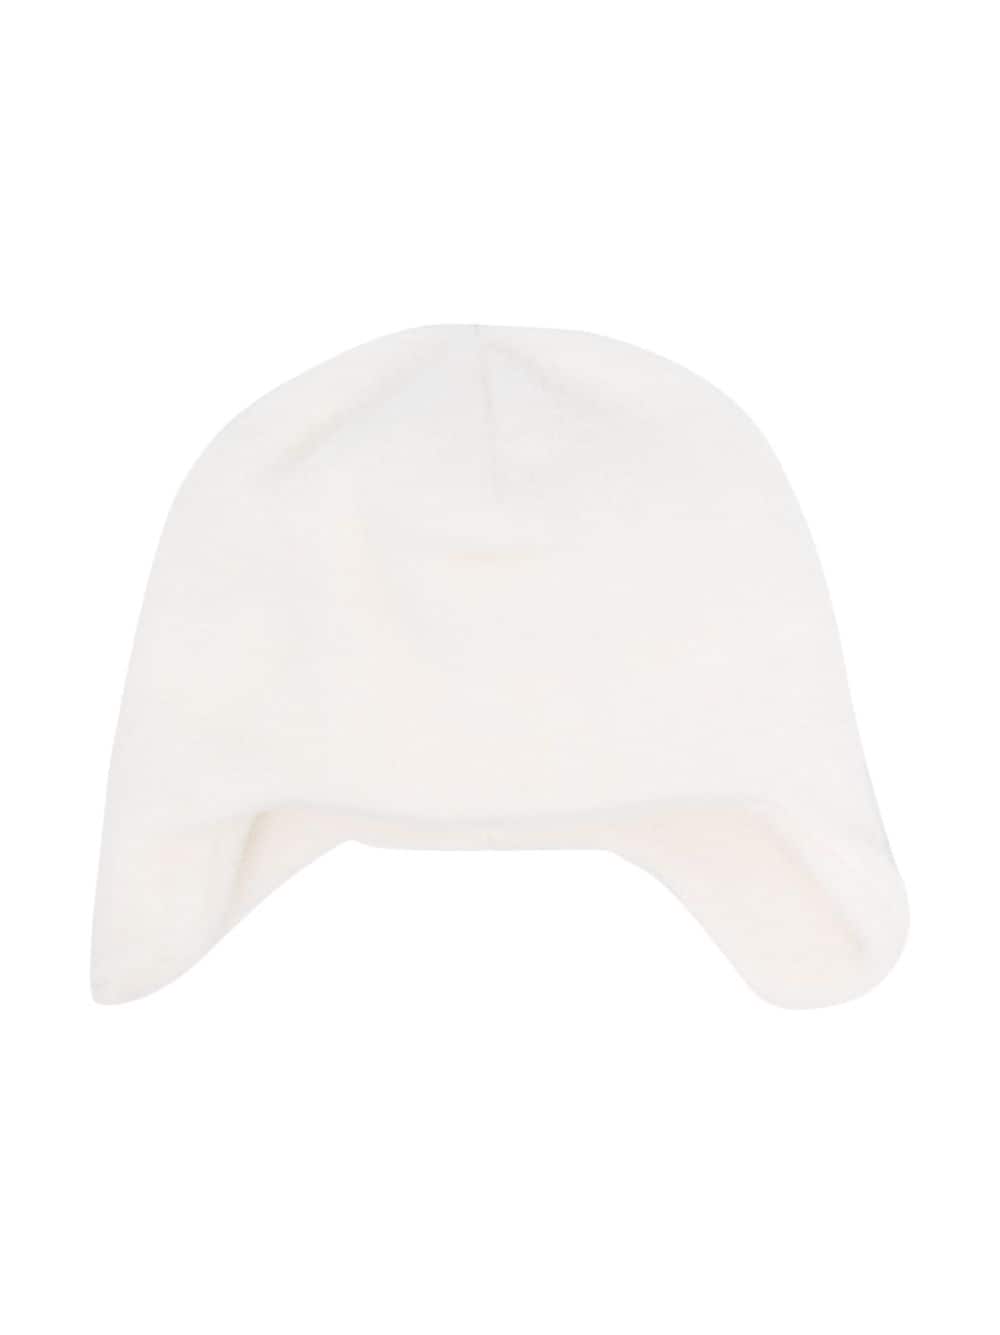 Cappello bianco neonato unisiex